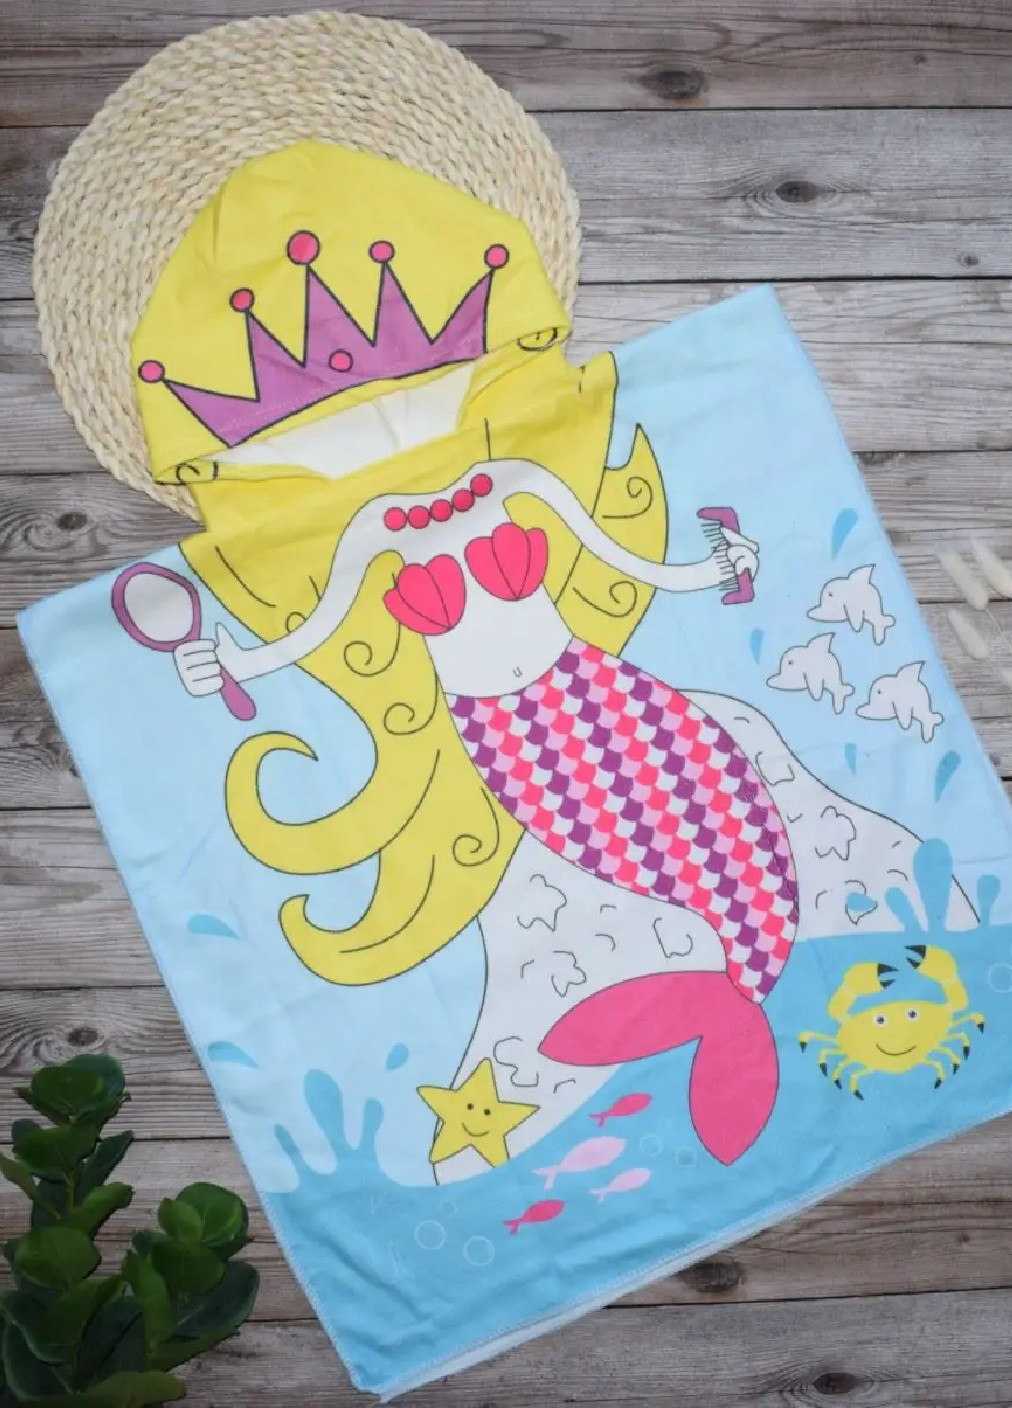 Unbranded детское пляжное полотенце пончо с капюшоном микрофибра для ванной бассейна пляжа 60х60 см (474691-prob) русалка рисунок серый производство -